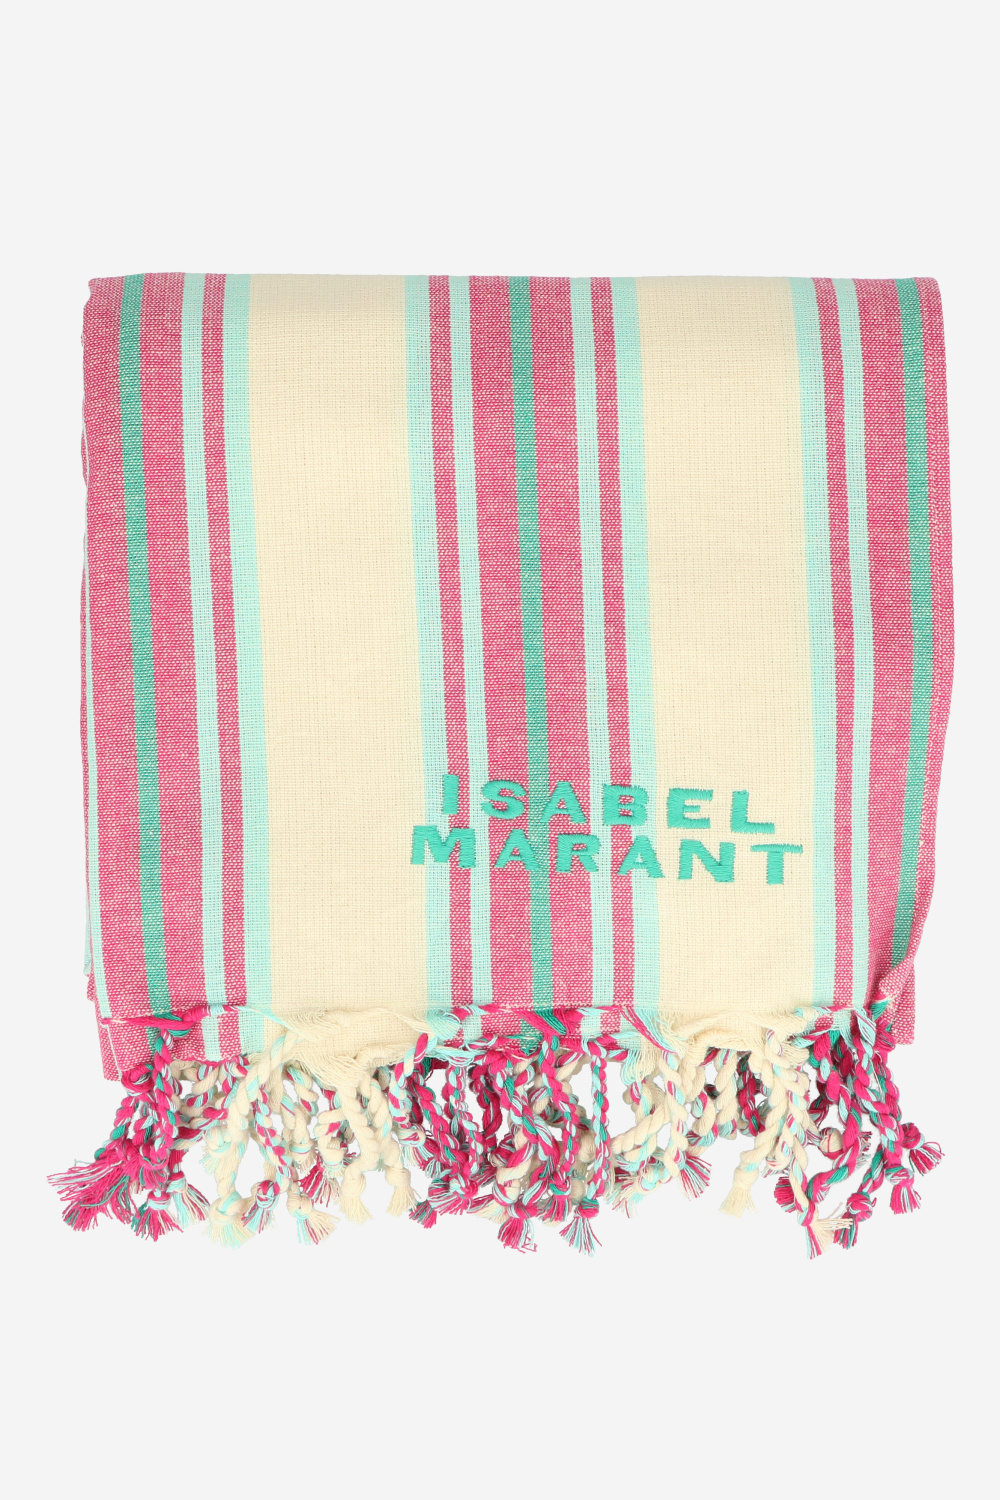 Isabel Marant Handdoeken Roze